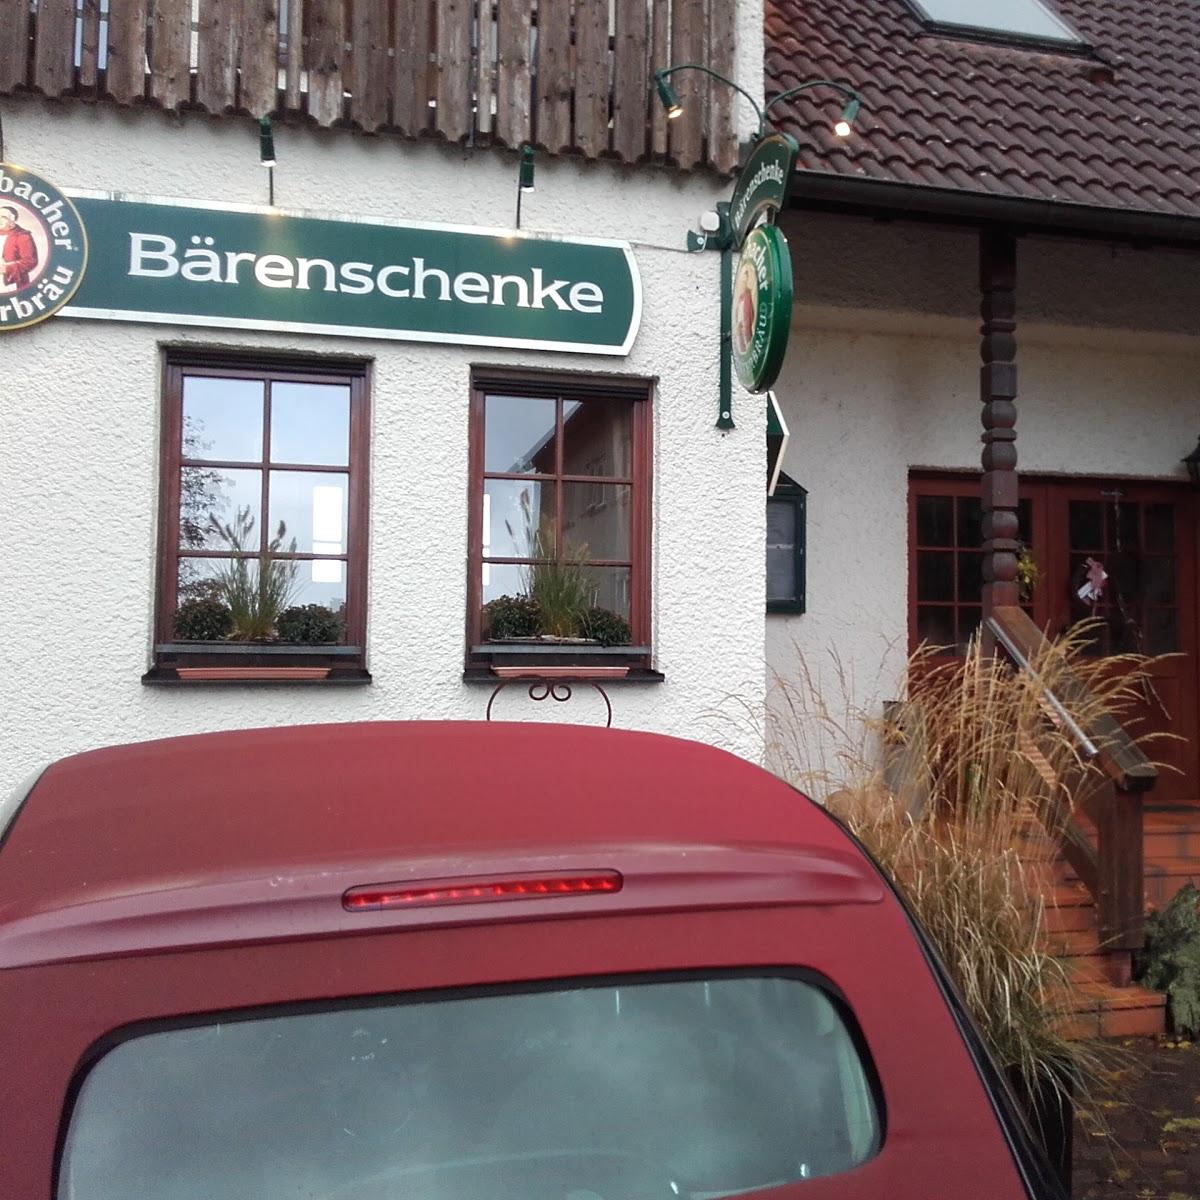 Restaurant "Gaststätte Bärenschenke" in Renchen